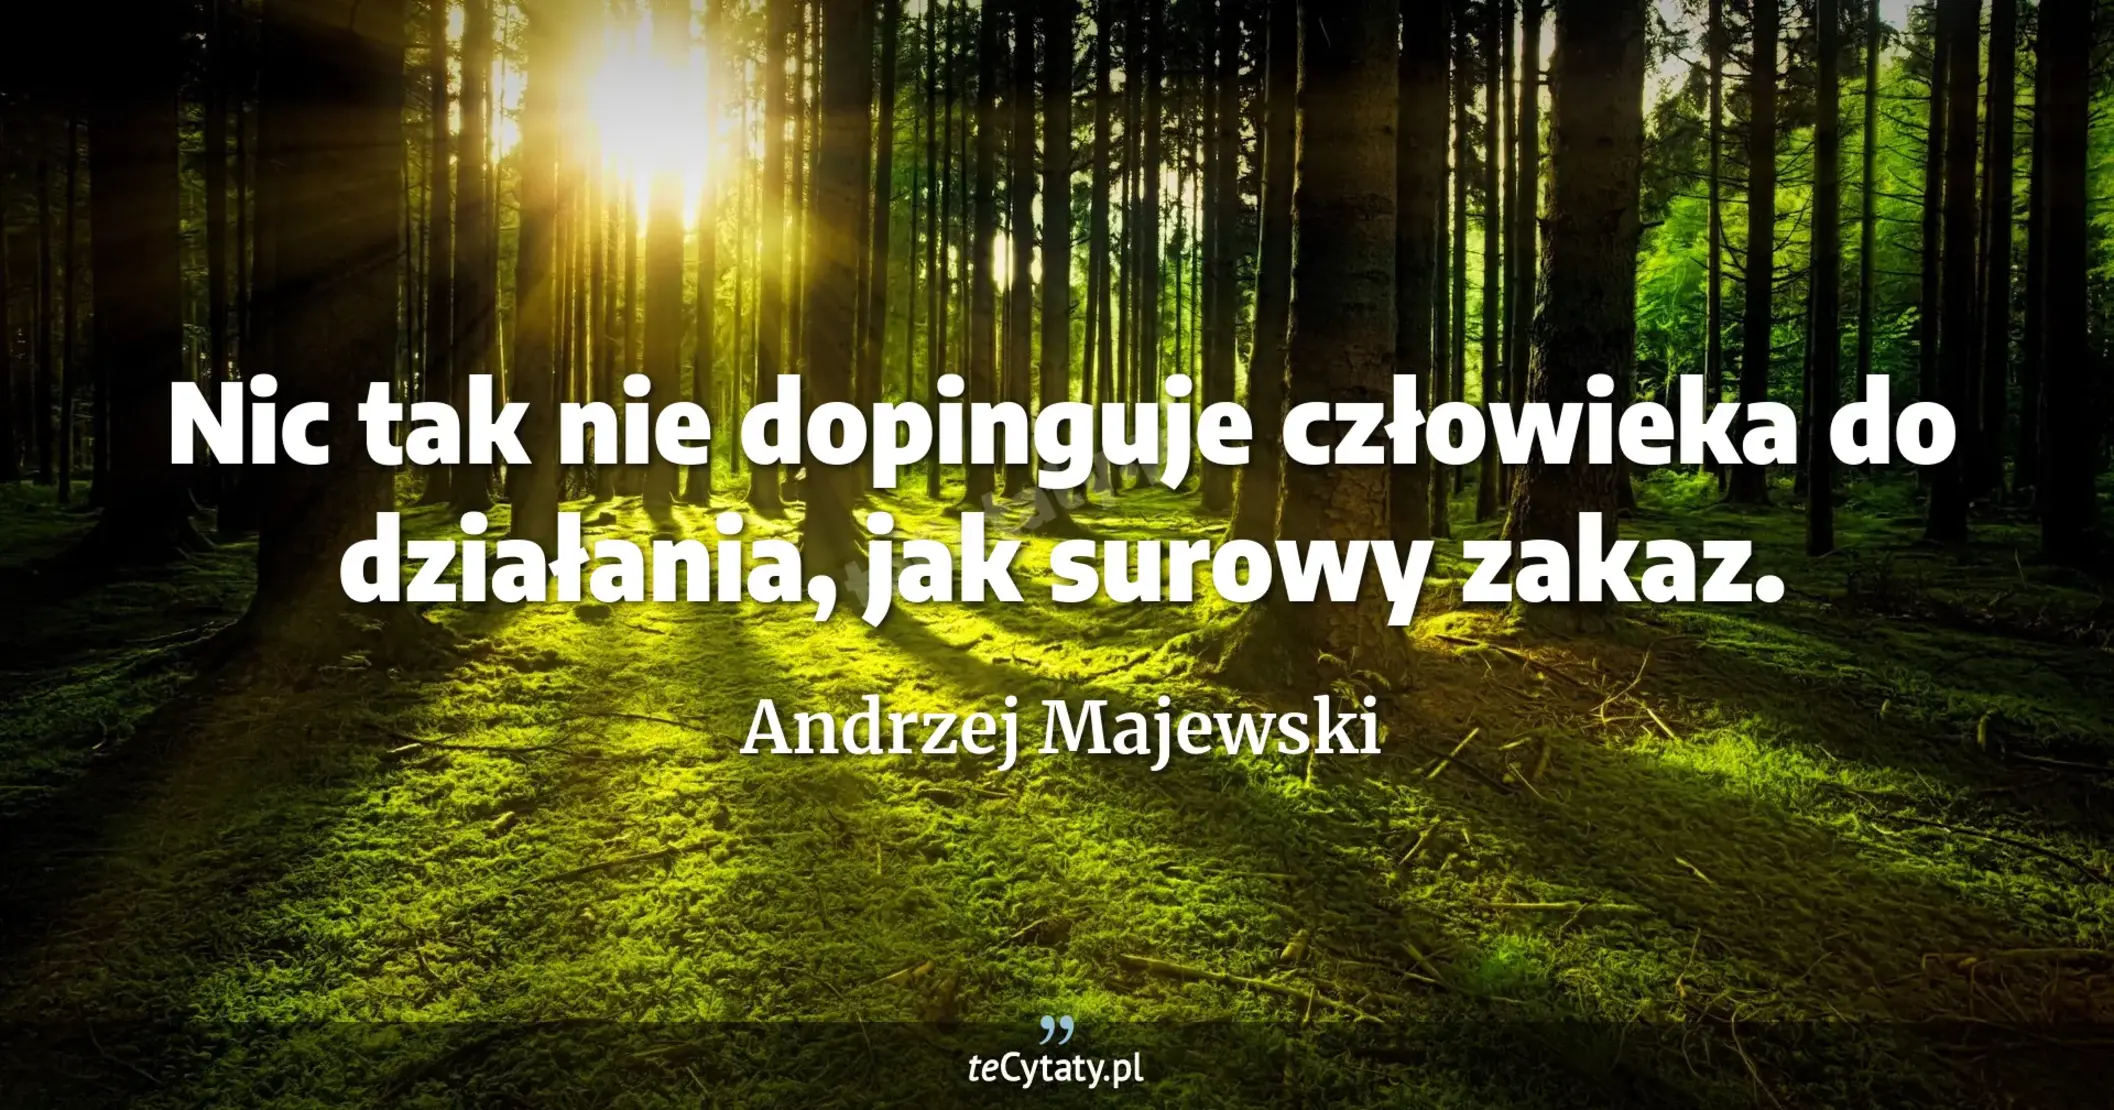 Nic tak nie dopinguje człowieka do działania, jak surowy zakaz. - Andrzej Majewski